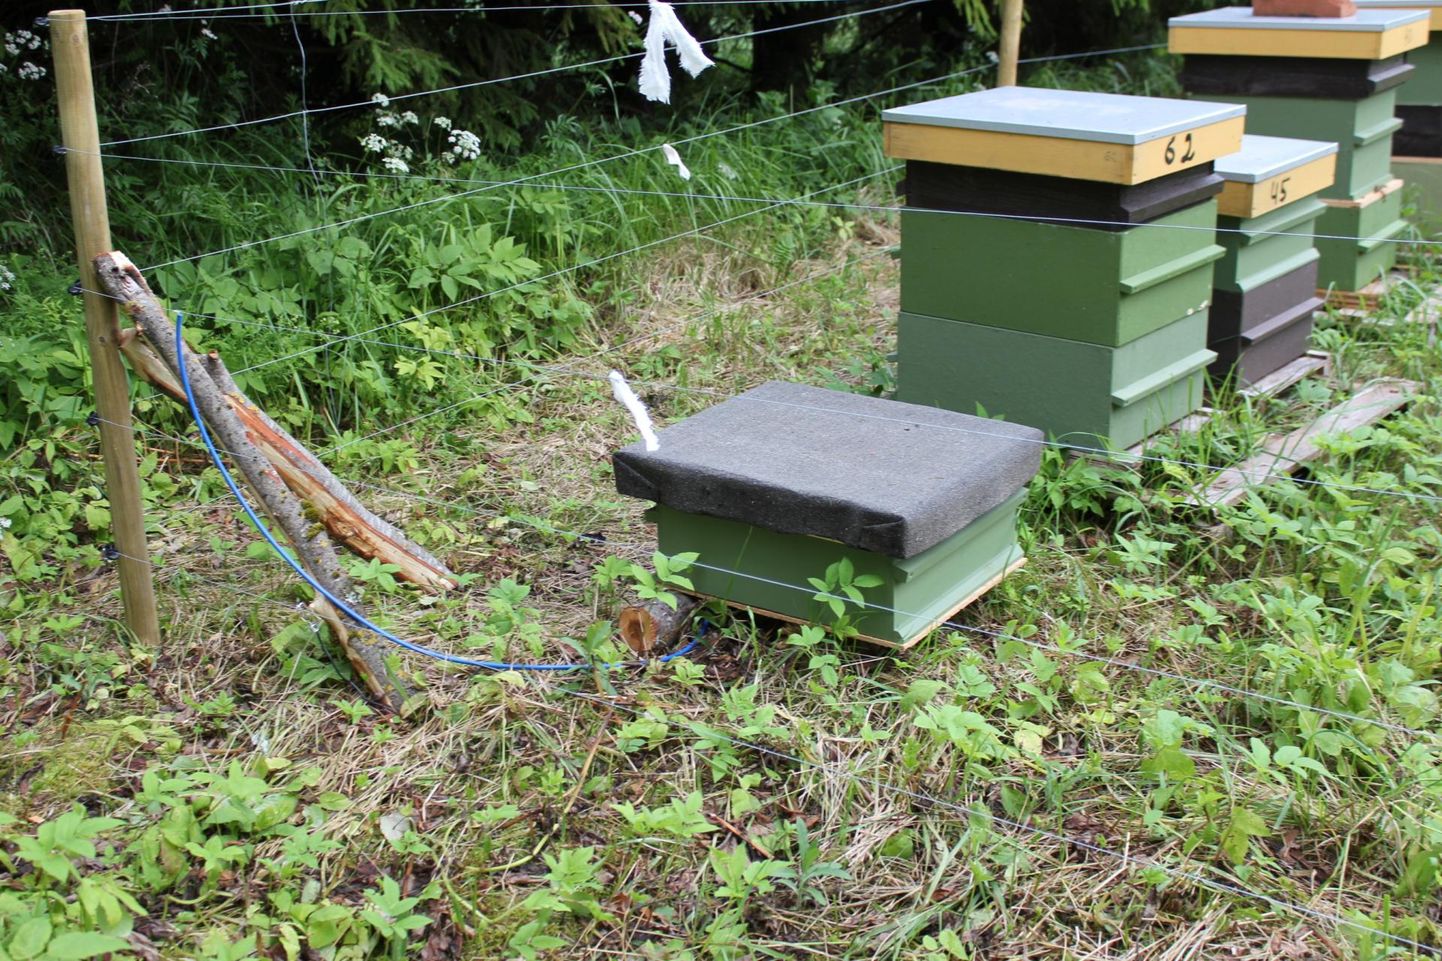 Korralikult ehitatud elektriaedik võib metslooma mesitaru juurest minema peletada.